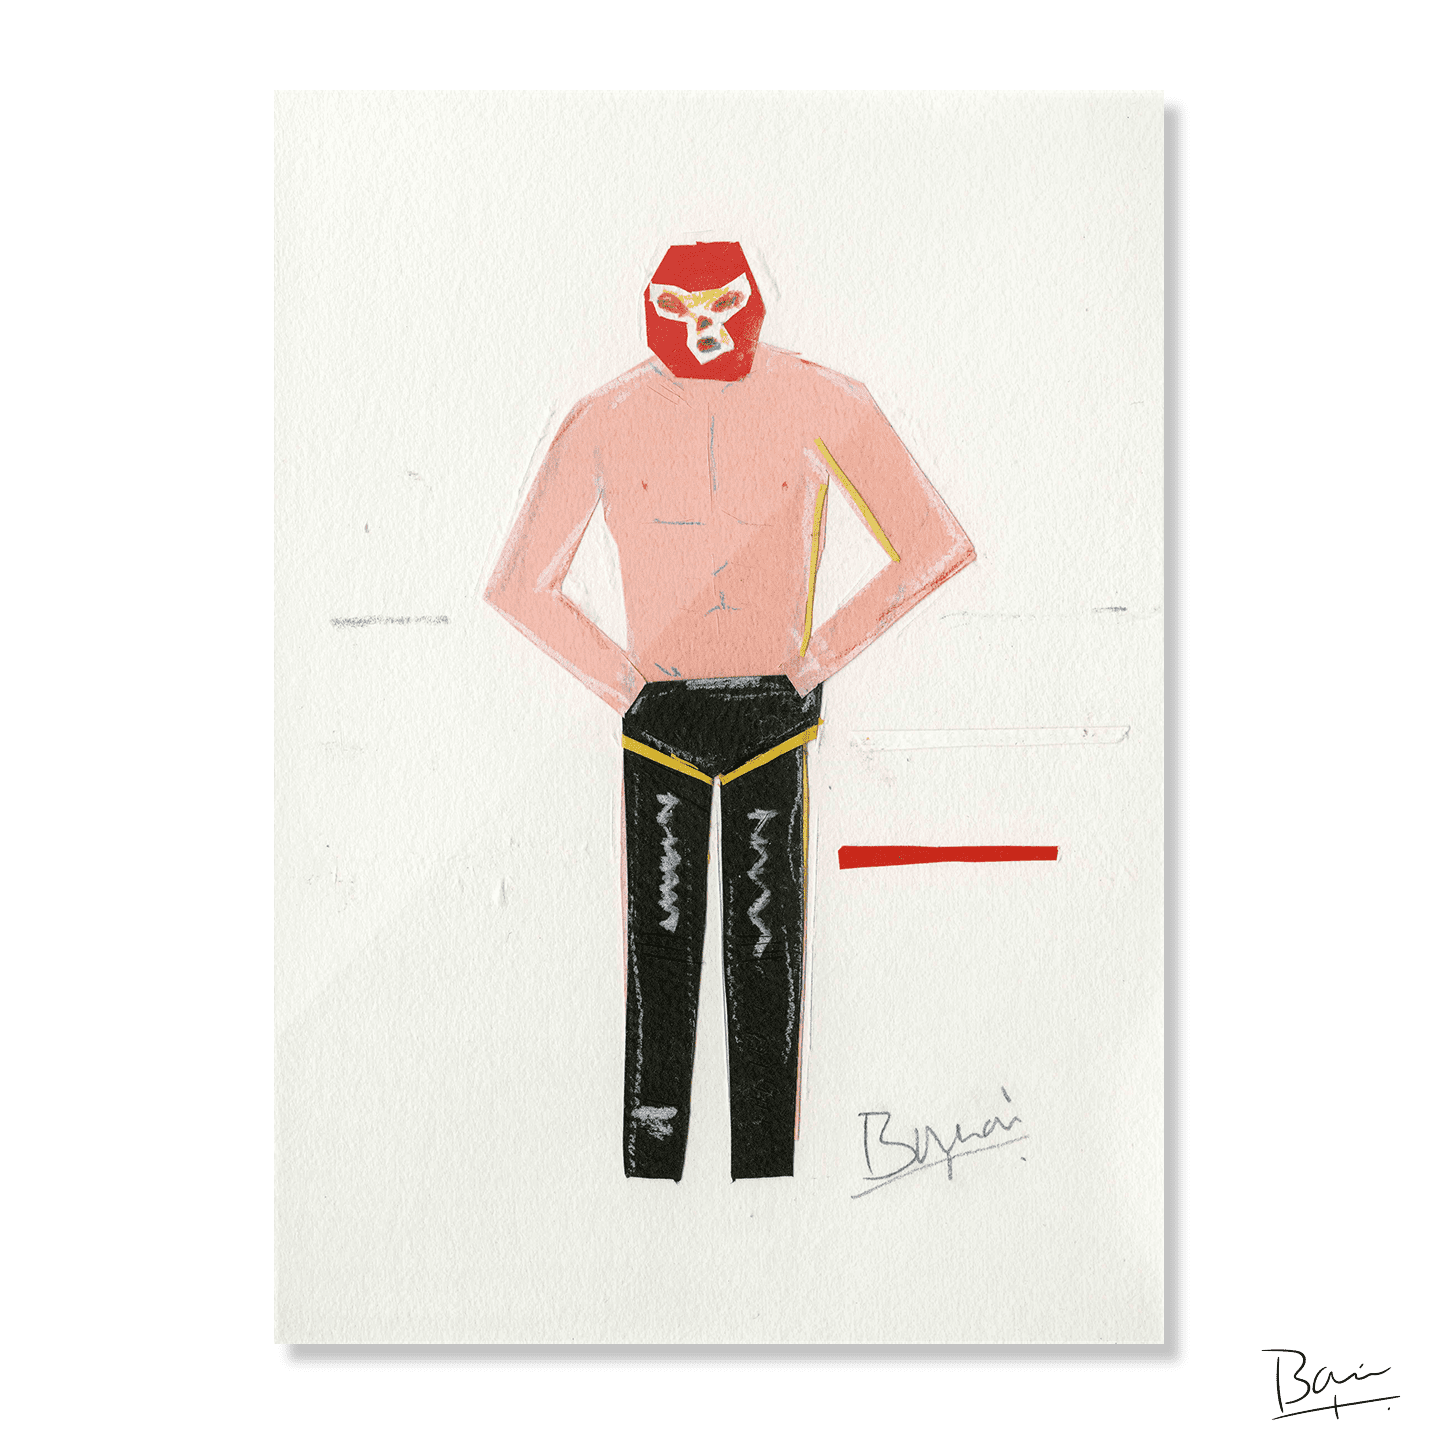 Masked Wrestler